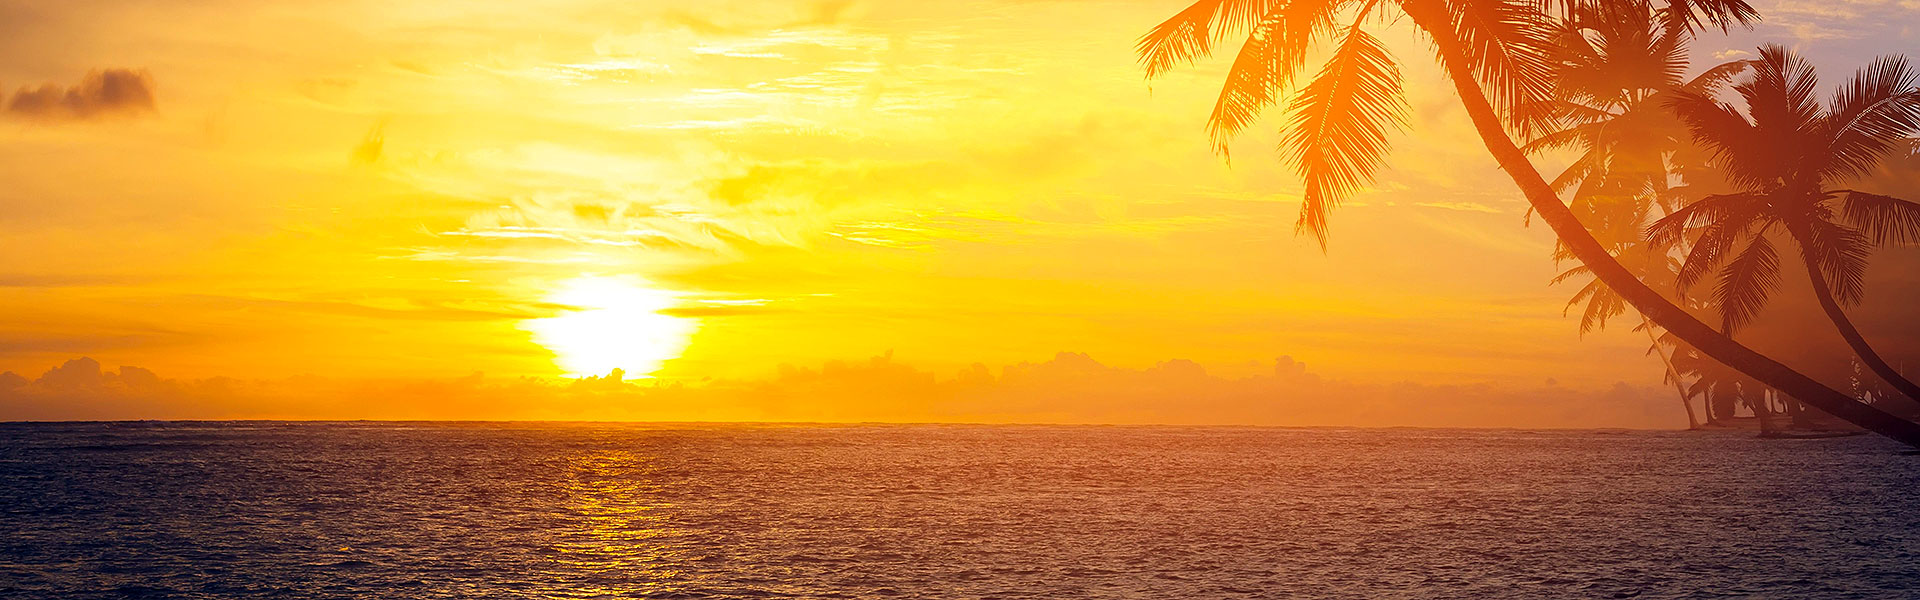 Villas on Seven Mile Beach, Grand Cayman Sunset - sunset